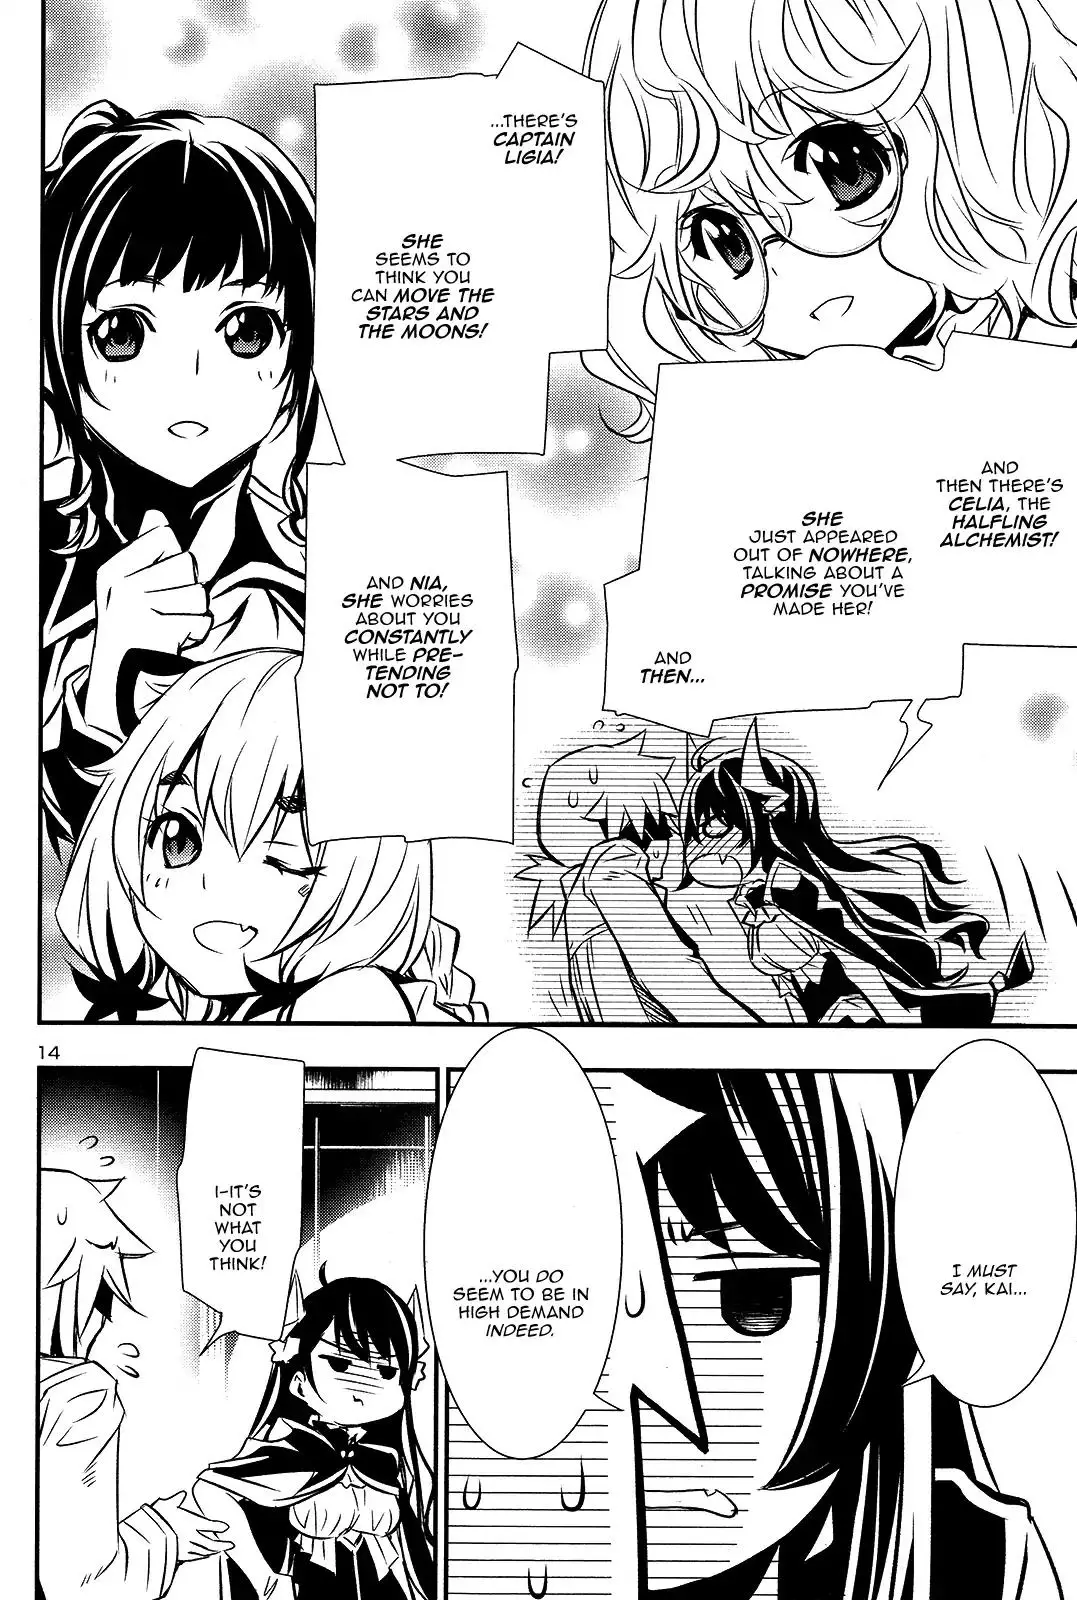 Shinju no Nectar - 11 page 12